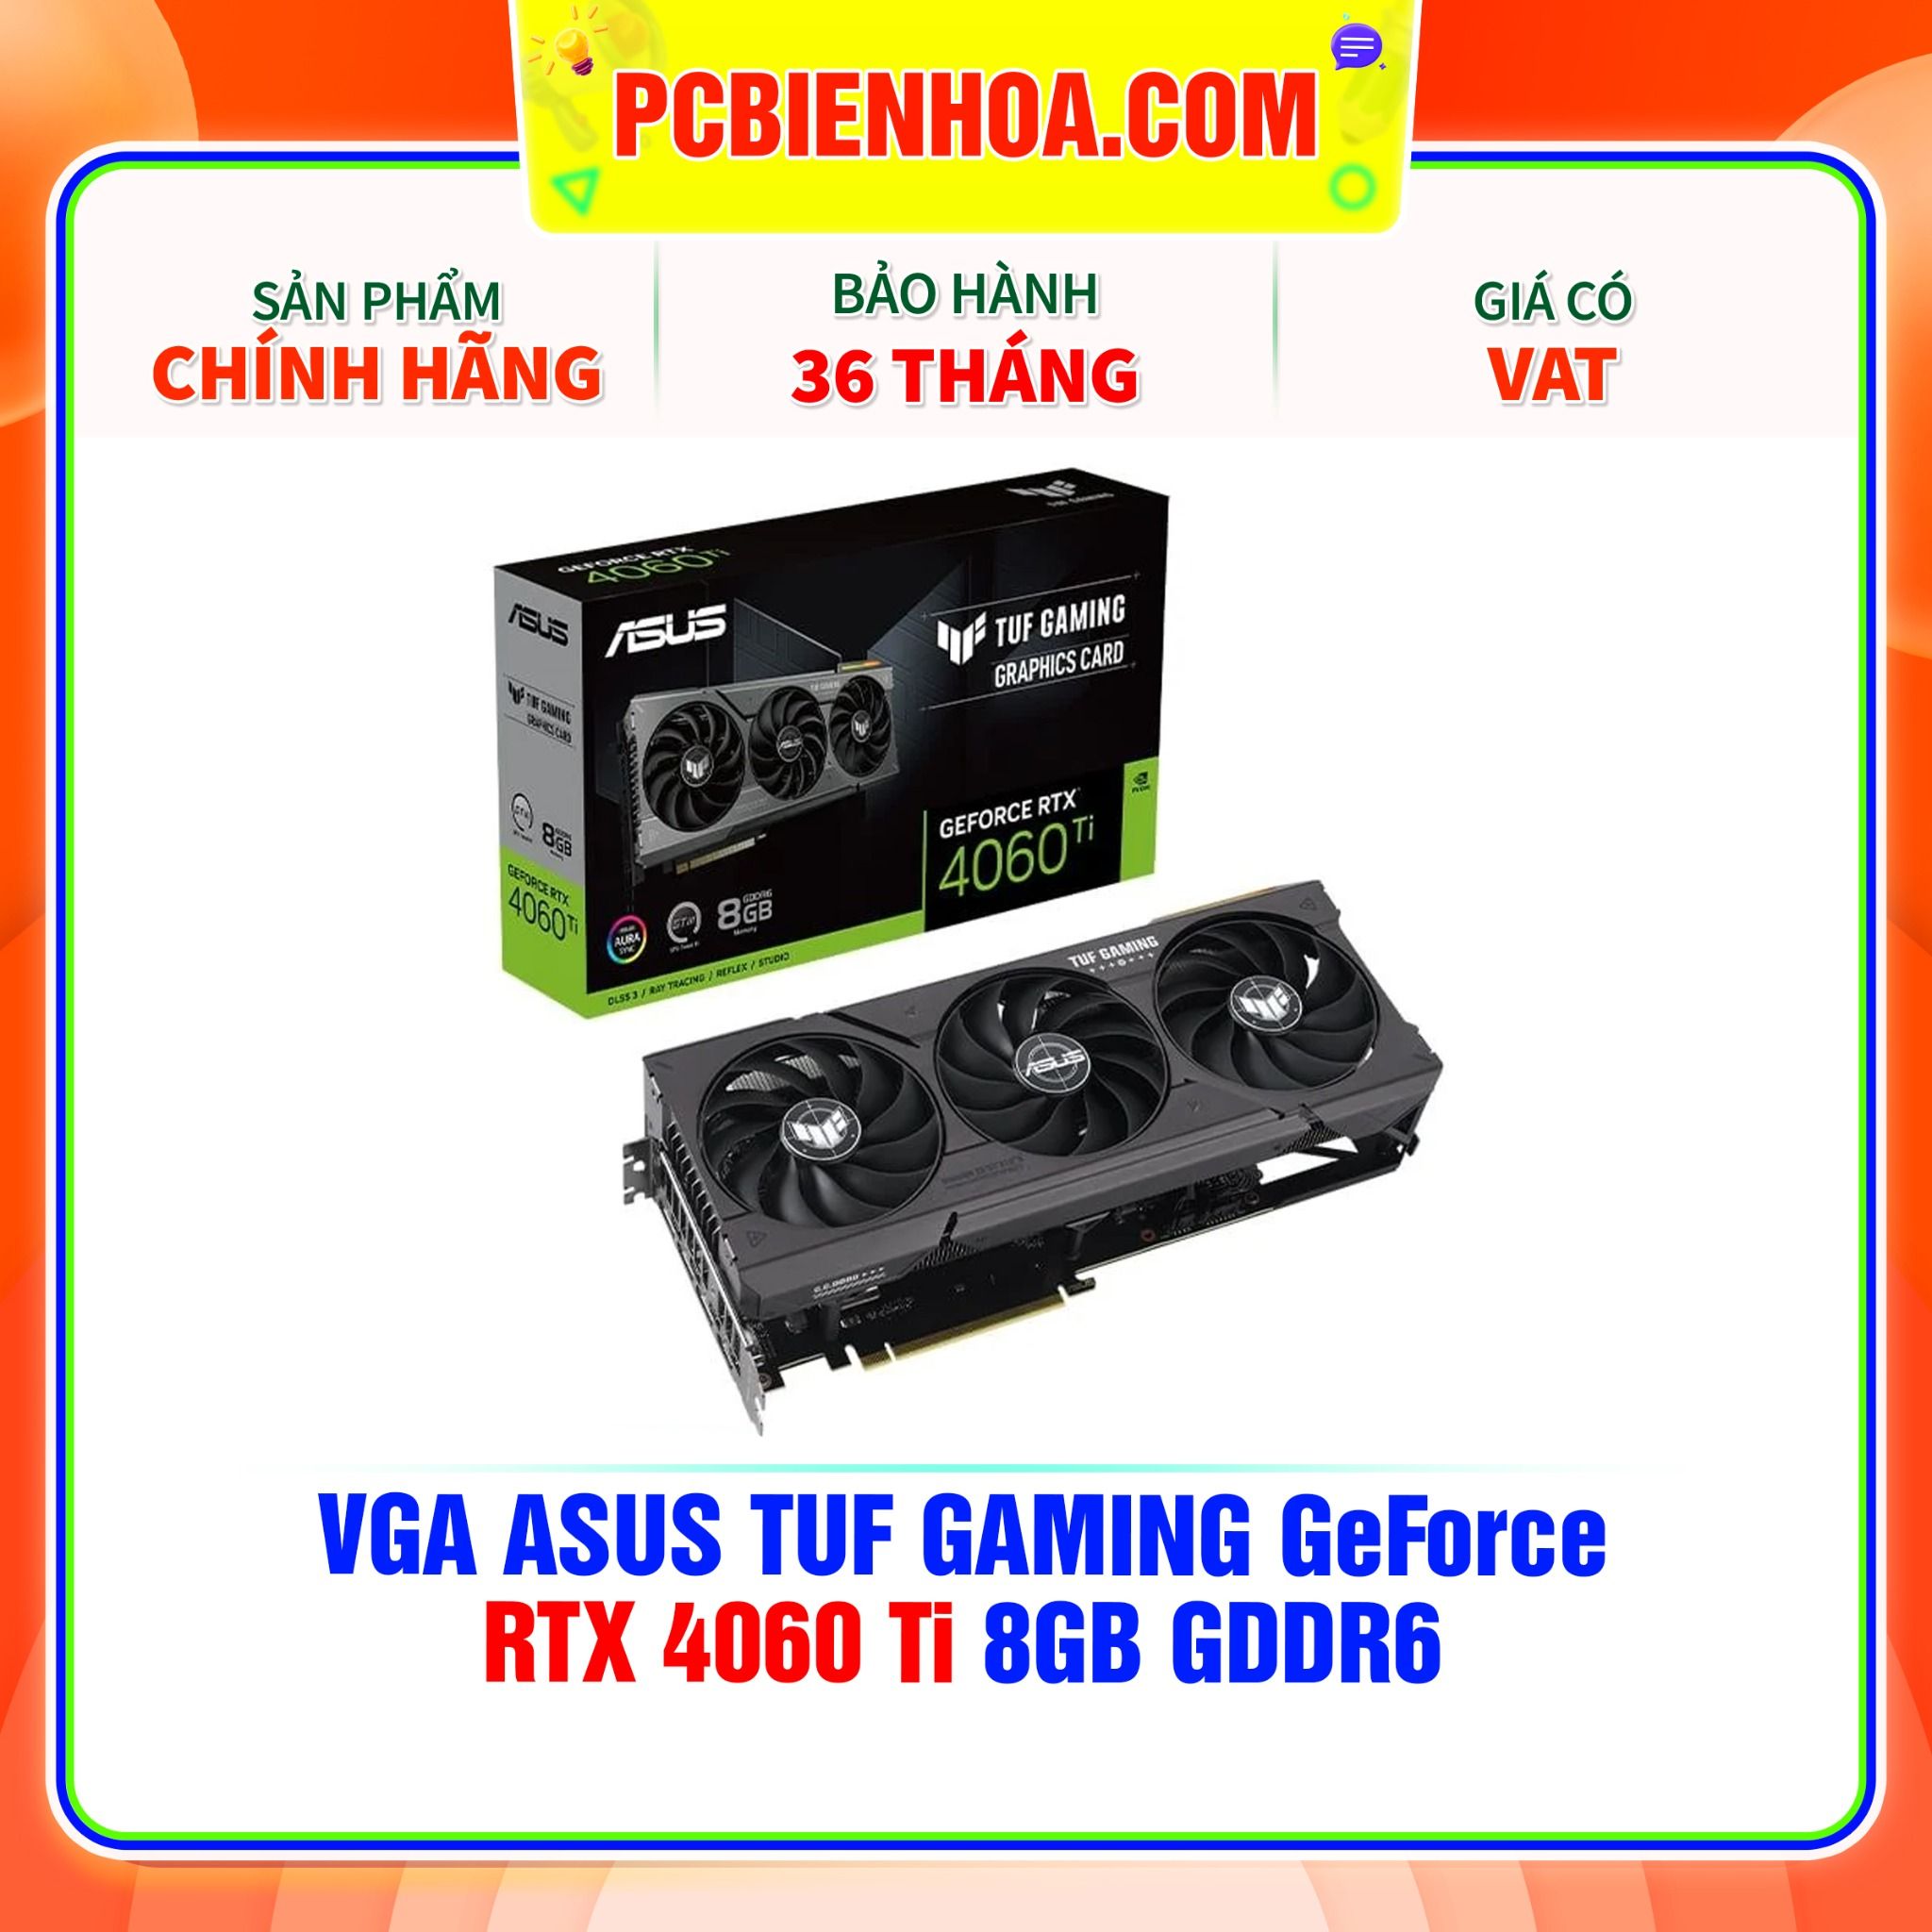  VGA ASUS TUF GAMING GeForce RTX 4060 Ti 8GB GDDR6 ( TUF-RTX4060TI-8G-GAMING) 